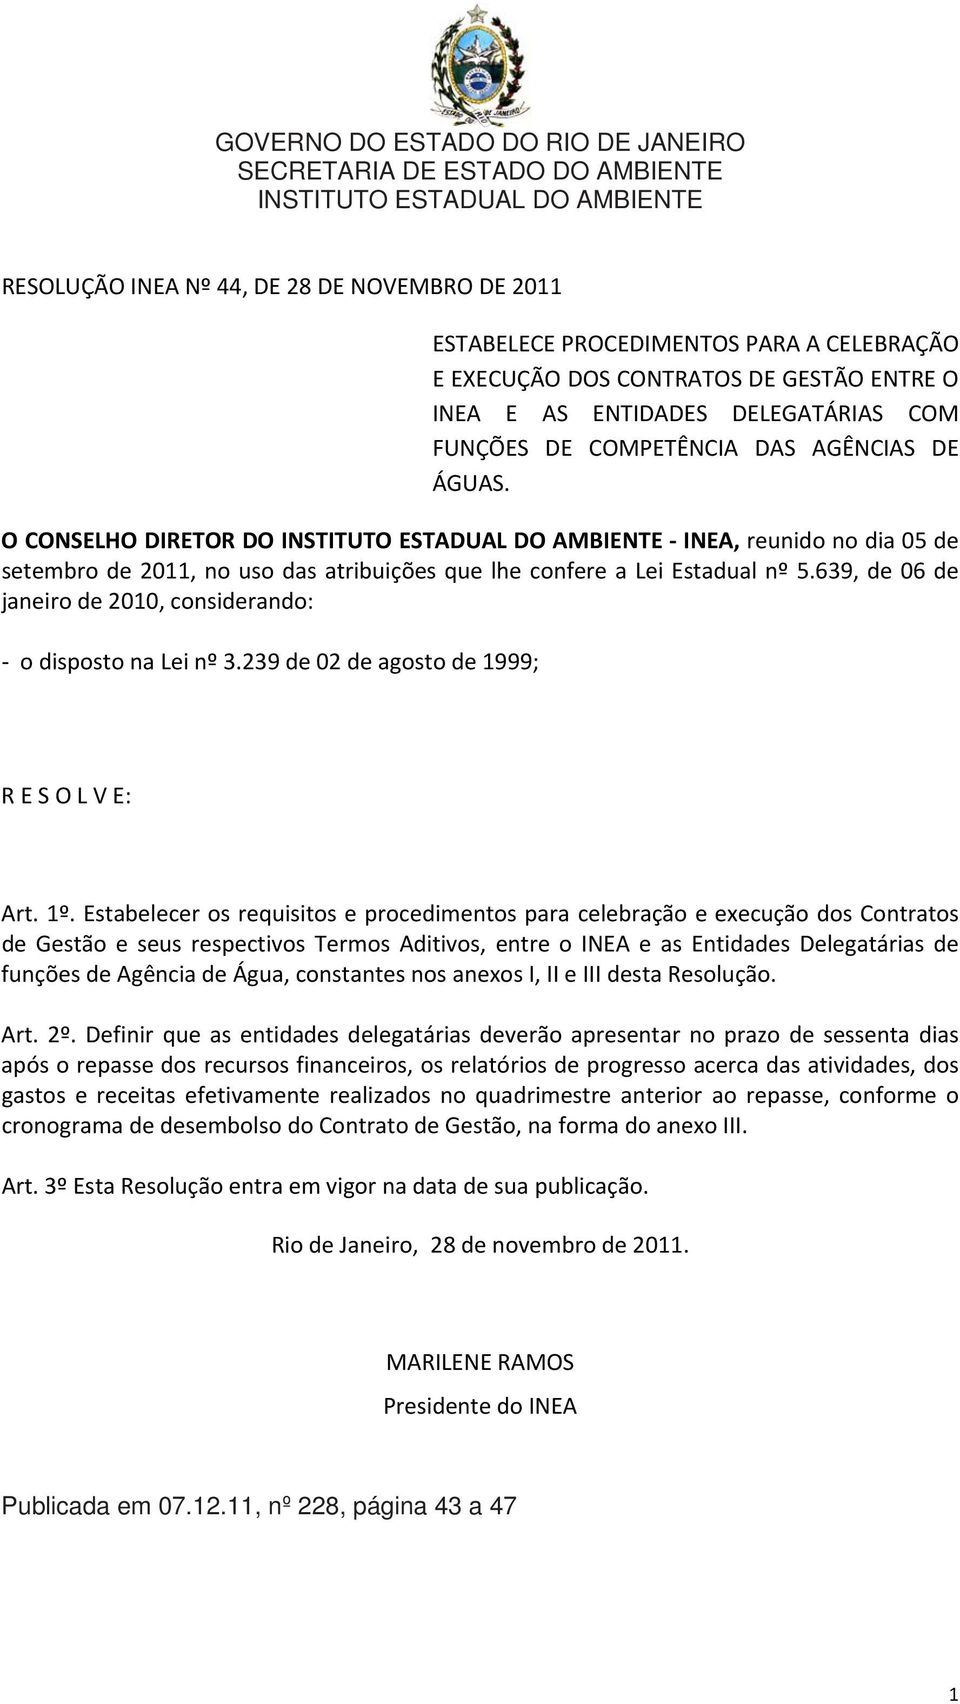 O CONSELHO DIRETOR DO INSTITUTO ESTADUAL DO AMBIENTE INEA, reunido no dia 05 de setembro de 2011, no uso das atribuições que lhe confere a Lei Estadual nº 5.